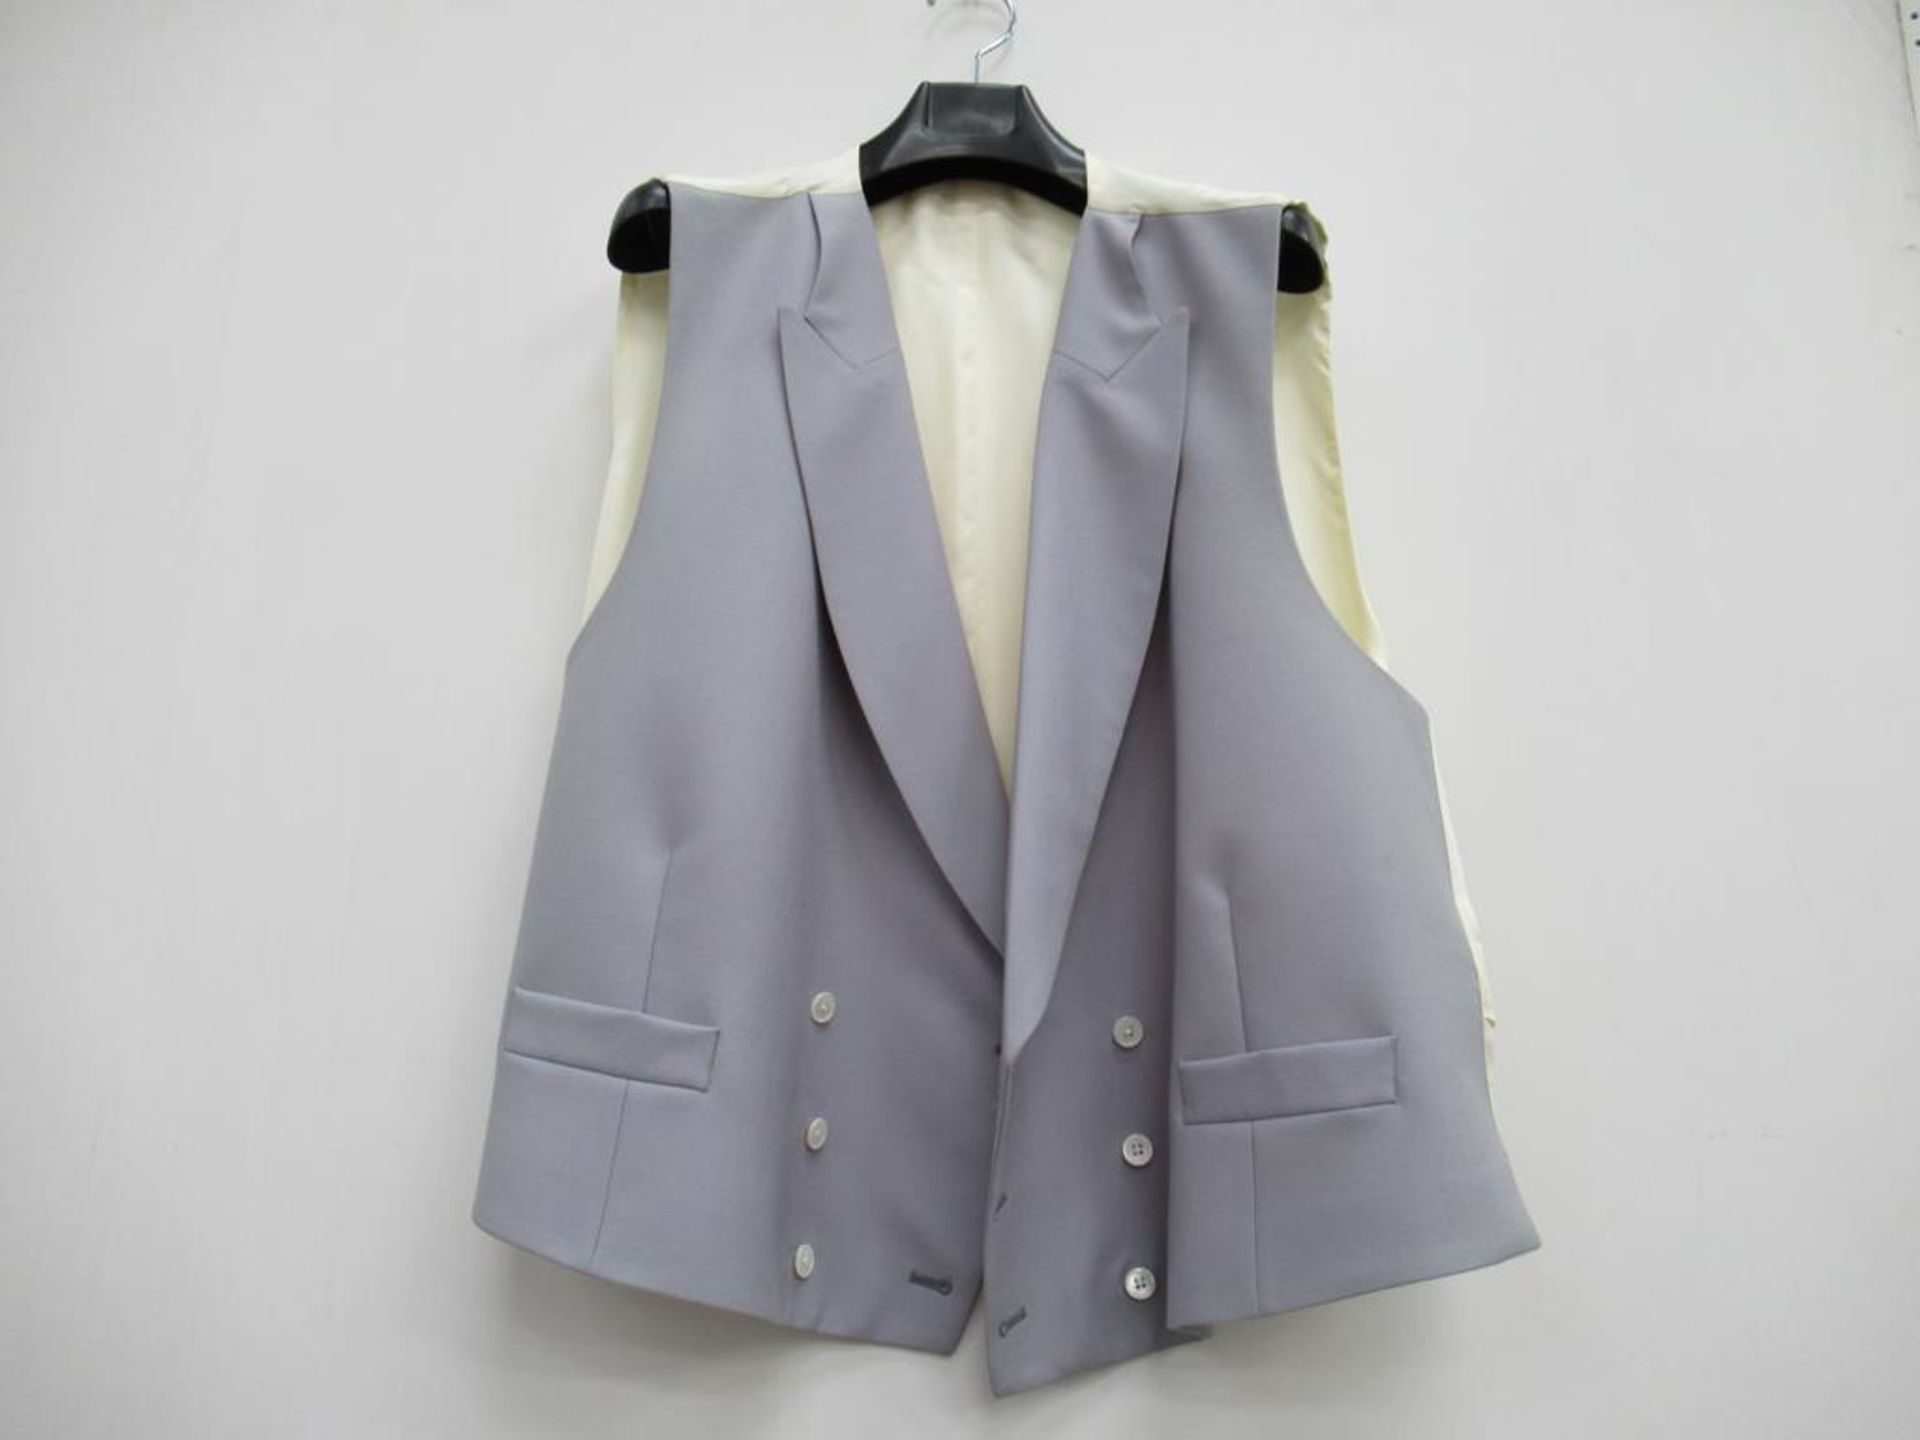 Fitzrovia morning coat and waistcoats - Image 3 of 3